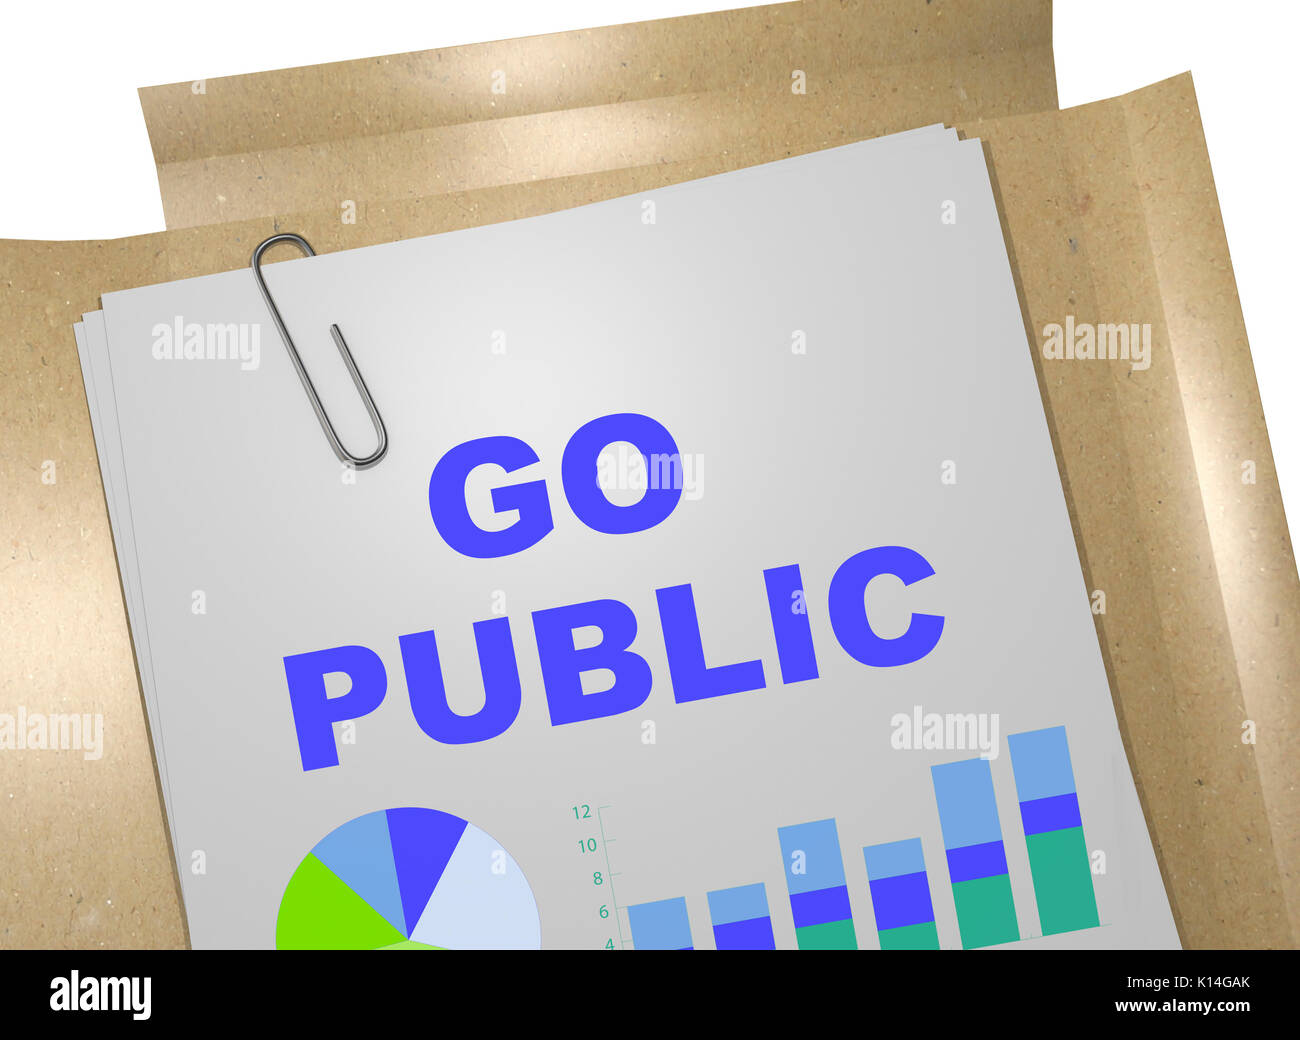 Ilustración 3D de 'Go public" Título de documento Foto de stock